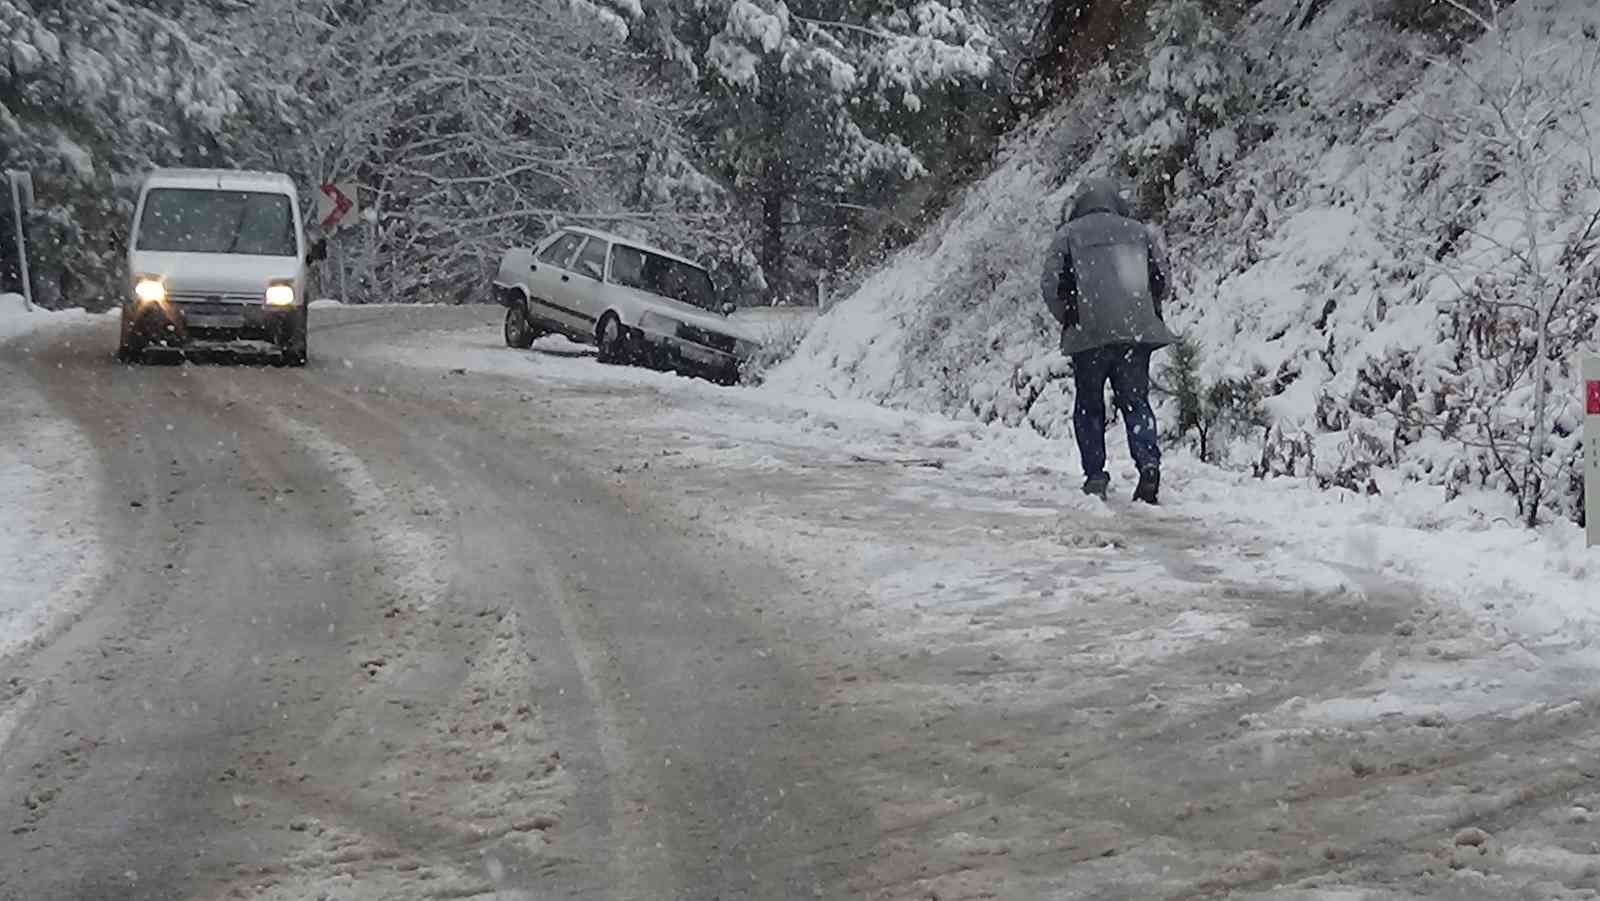 Kazdağları’nda kar kalınlığı 20 santimetreyi aştı, sürücüler zor anlar yaşadı #canakkale